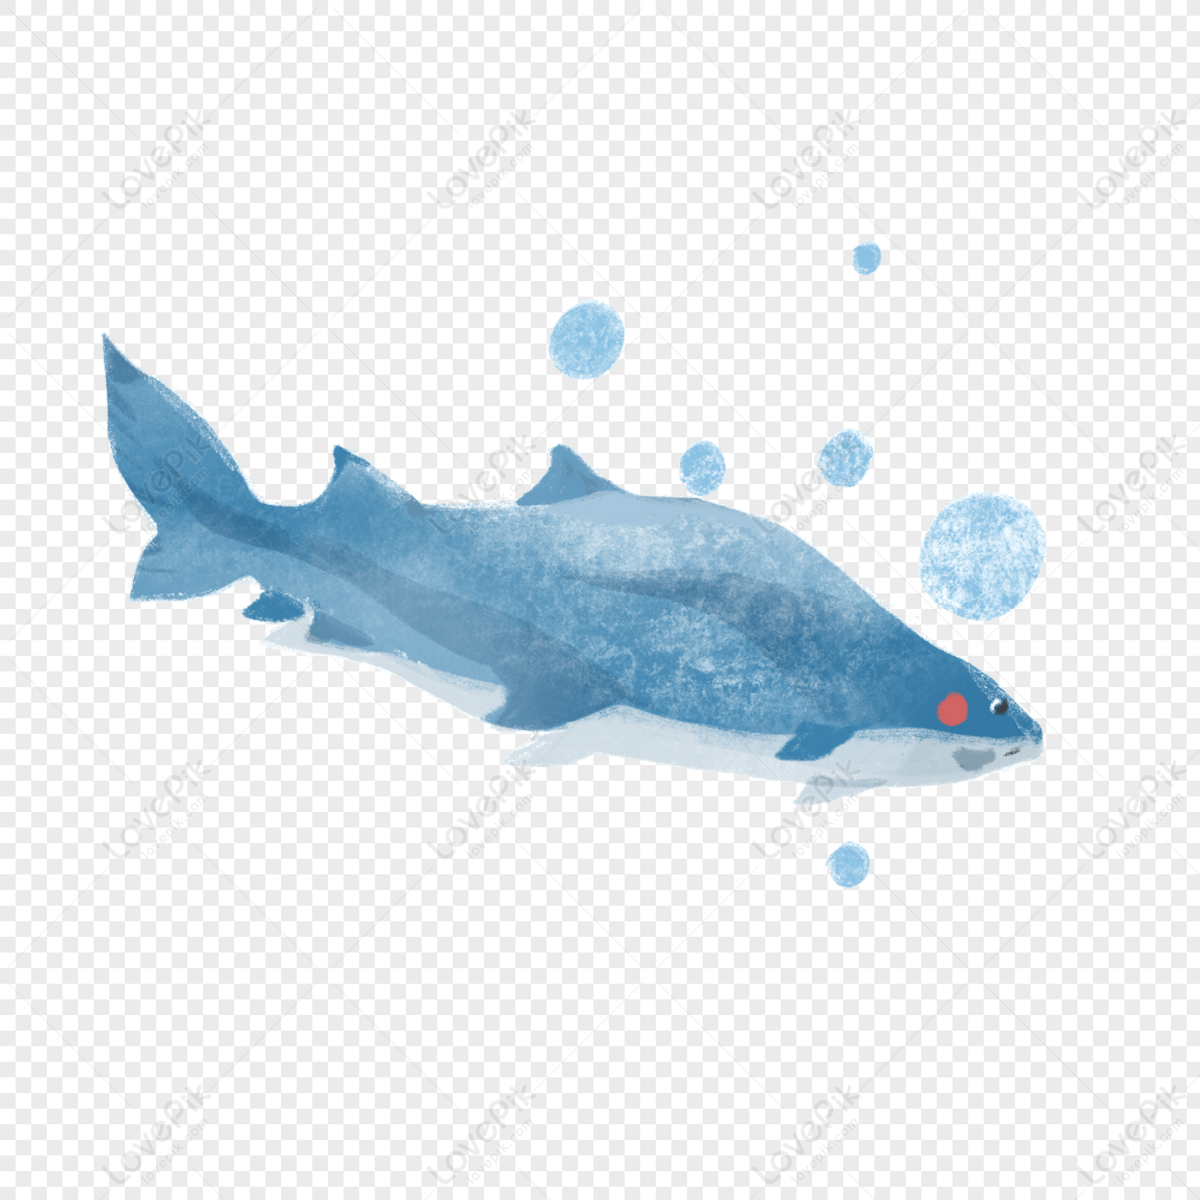 Hình ảnh Vẽ Tay Cá Mập PNG Miễn Phí Tải Về - Lovepik